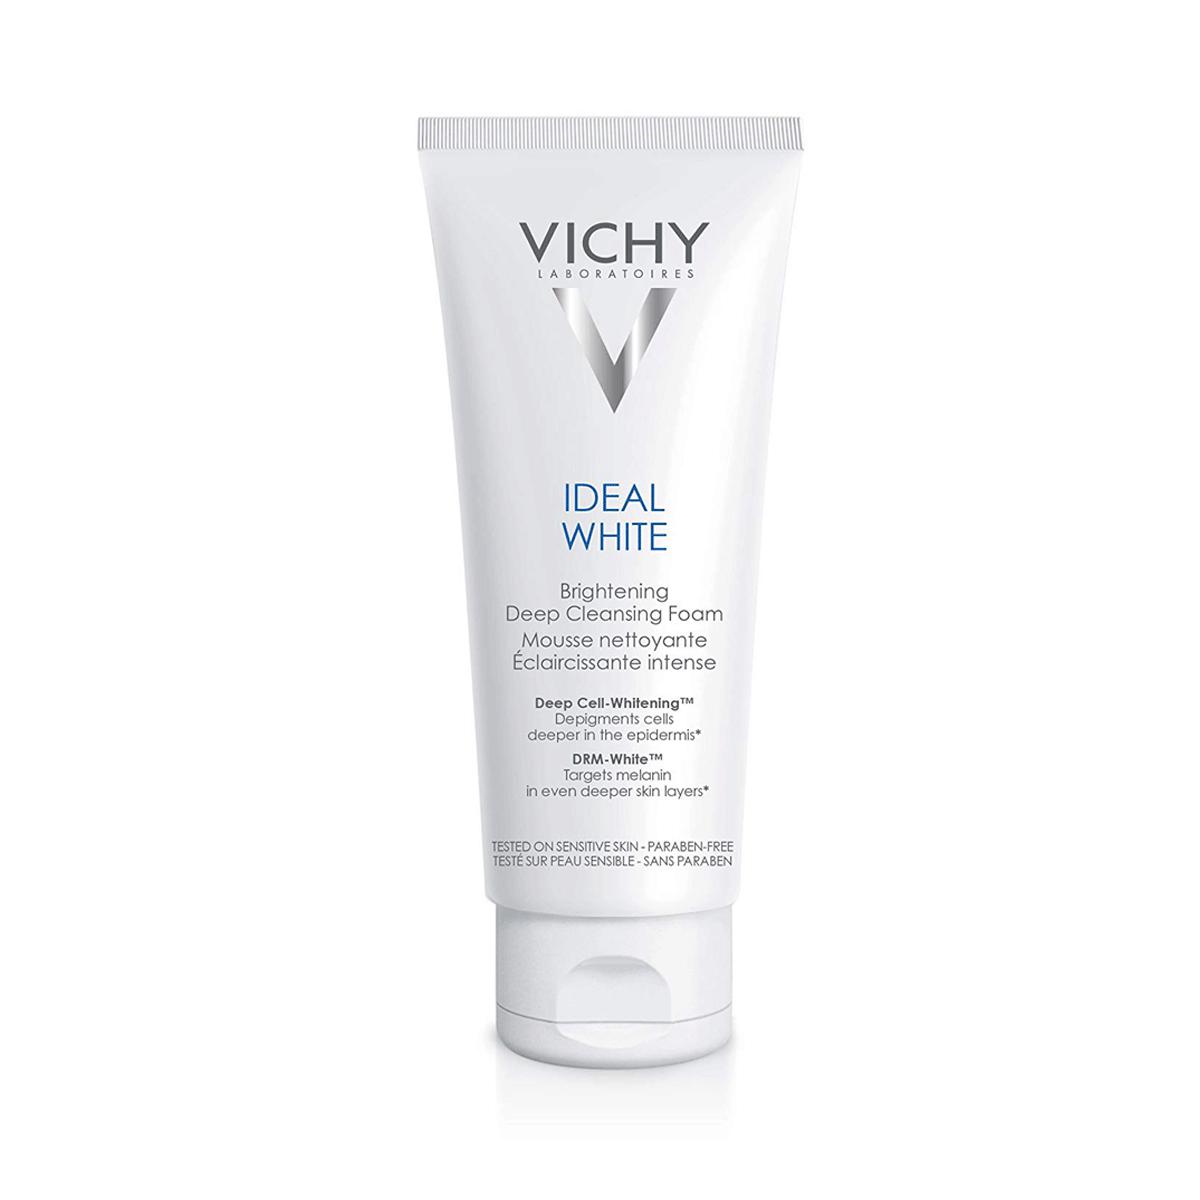 فوم پاک کننده و روشن کننده صورت مدل Ideal White حجم 100 میل -  Vichy Ideal White Brightening Cleansing Foam 100ml